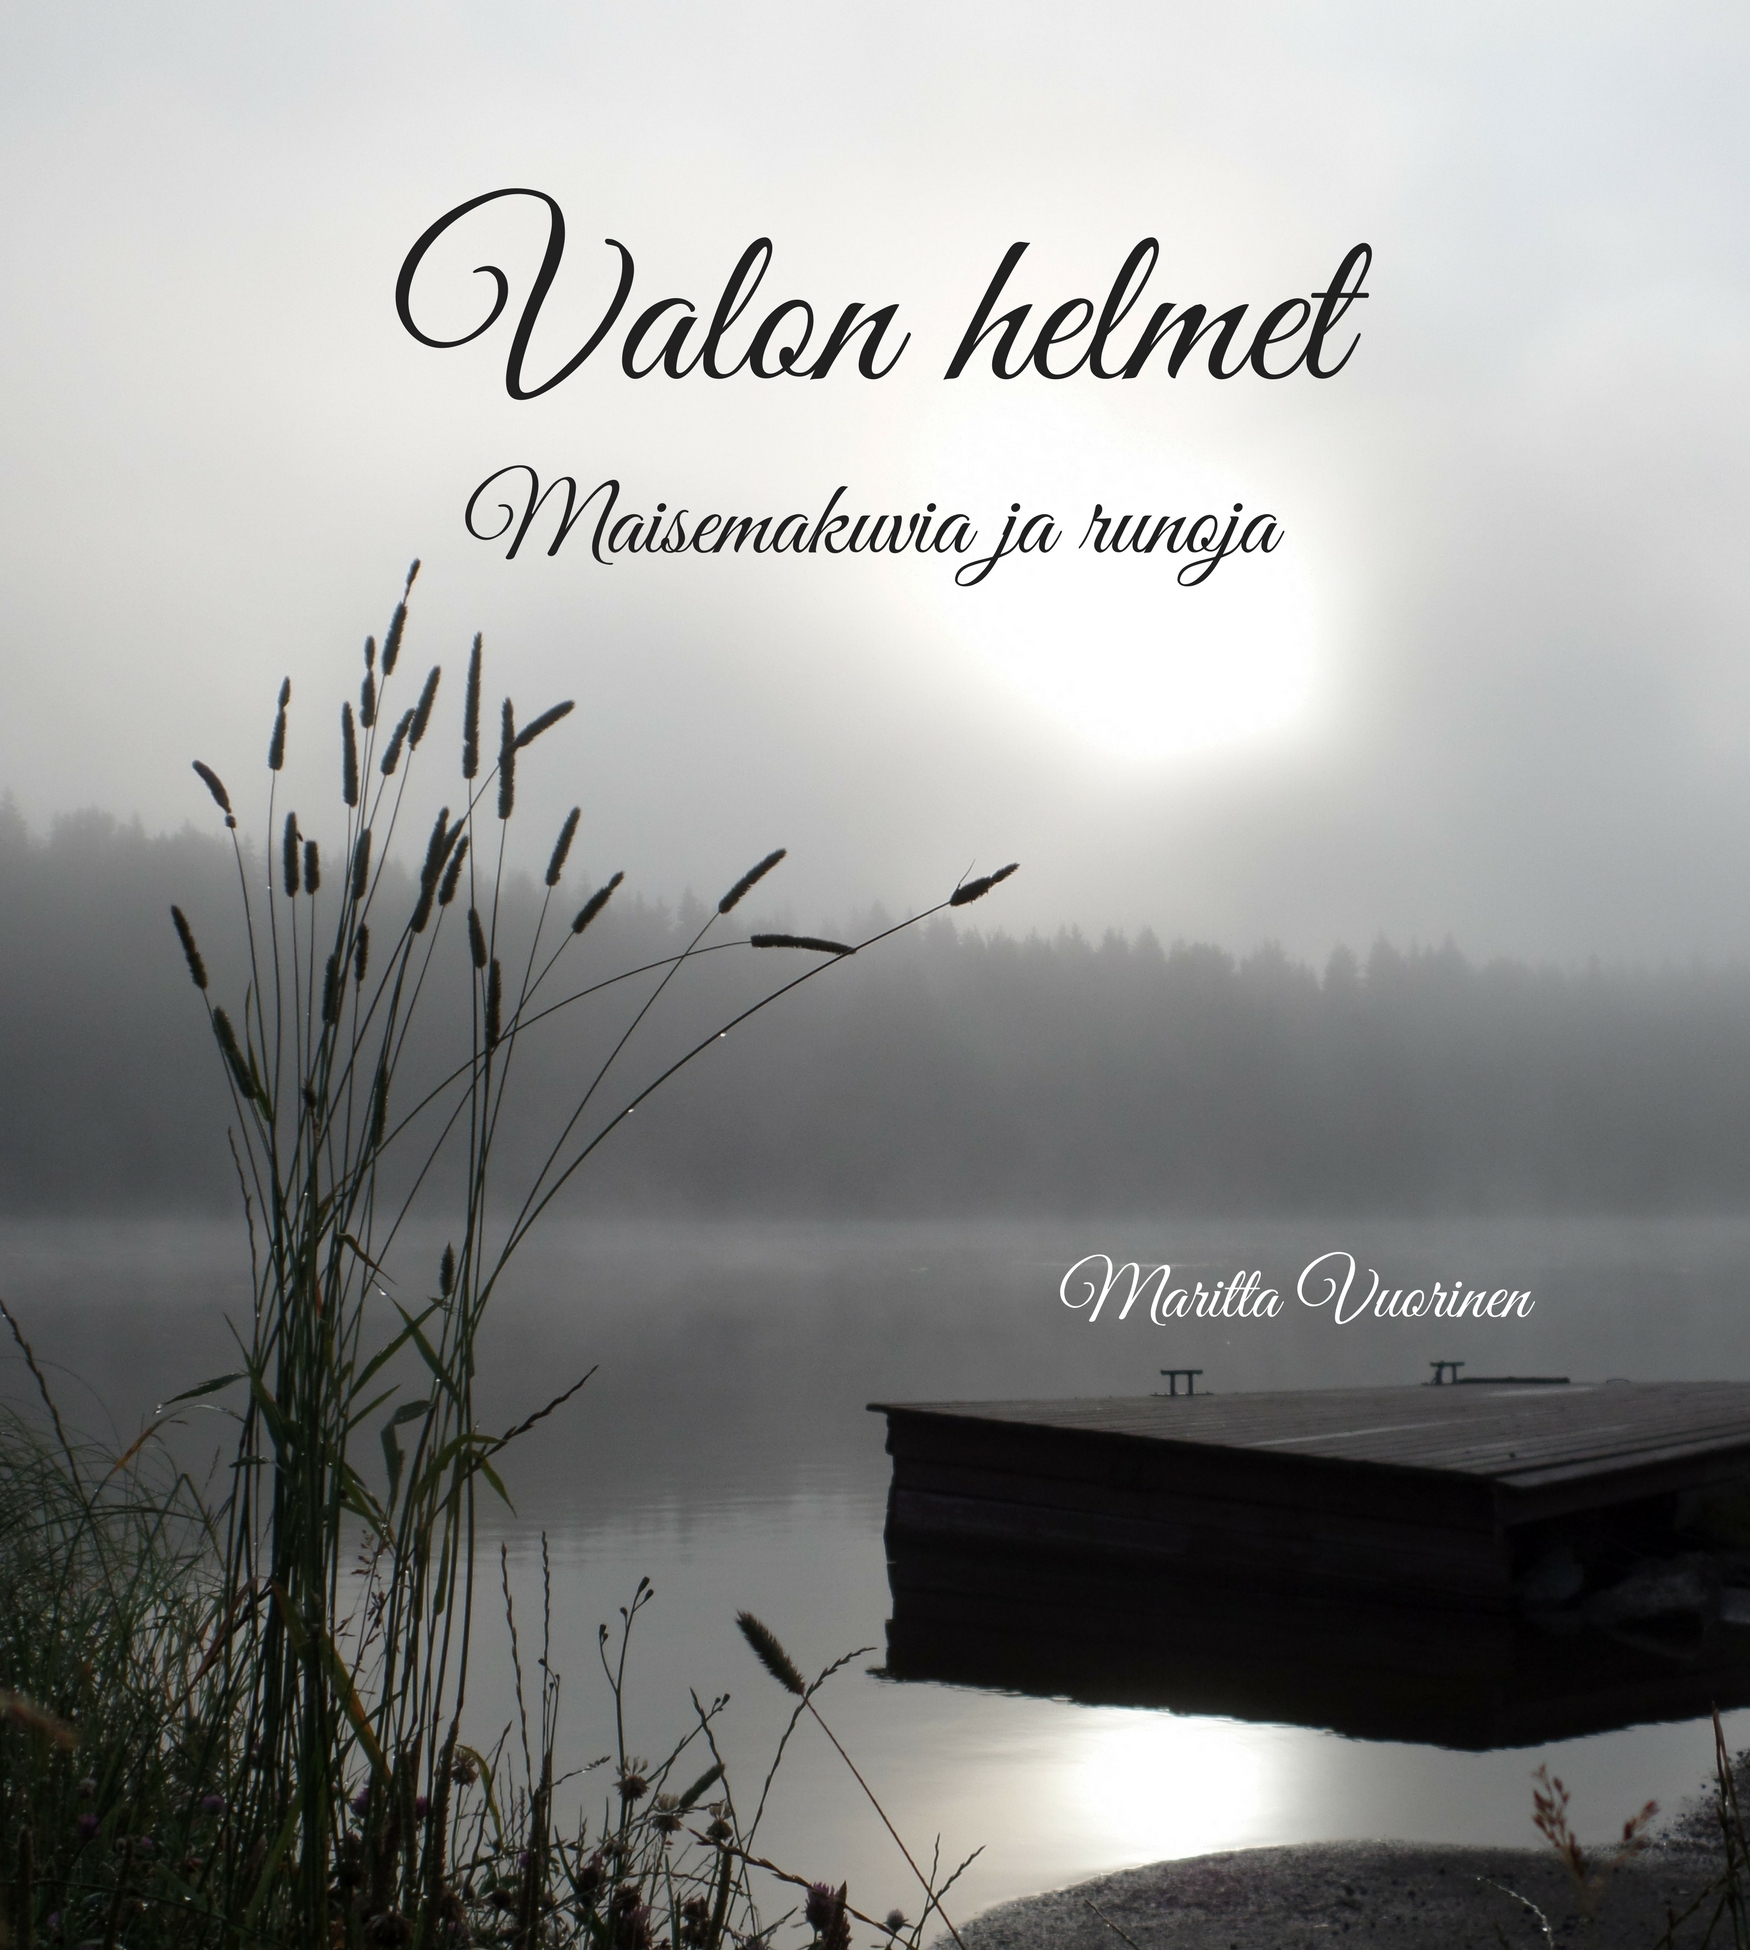 Valon helmet - runokirja Maritta Vuorinen